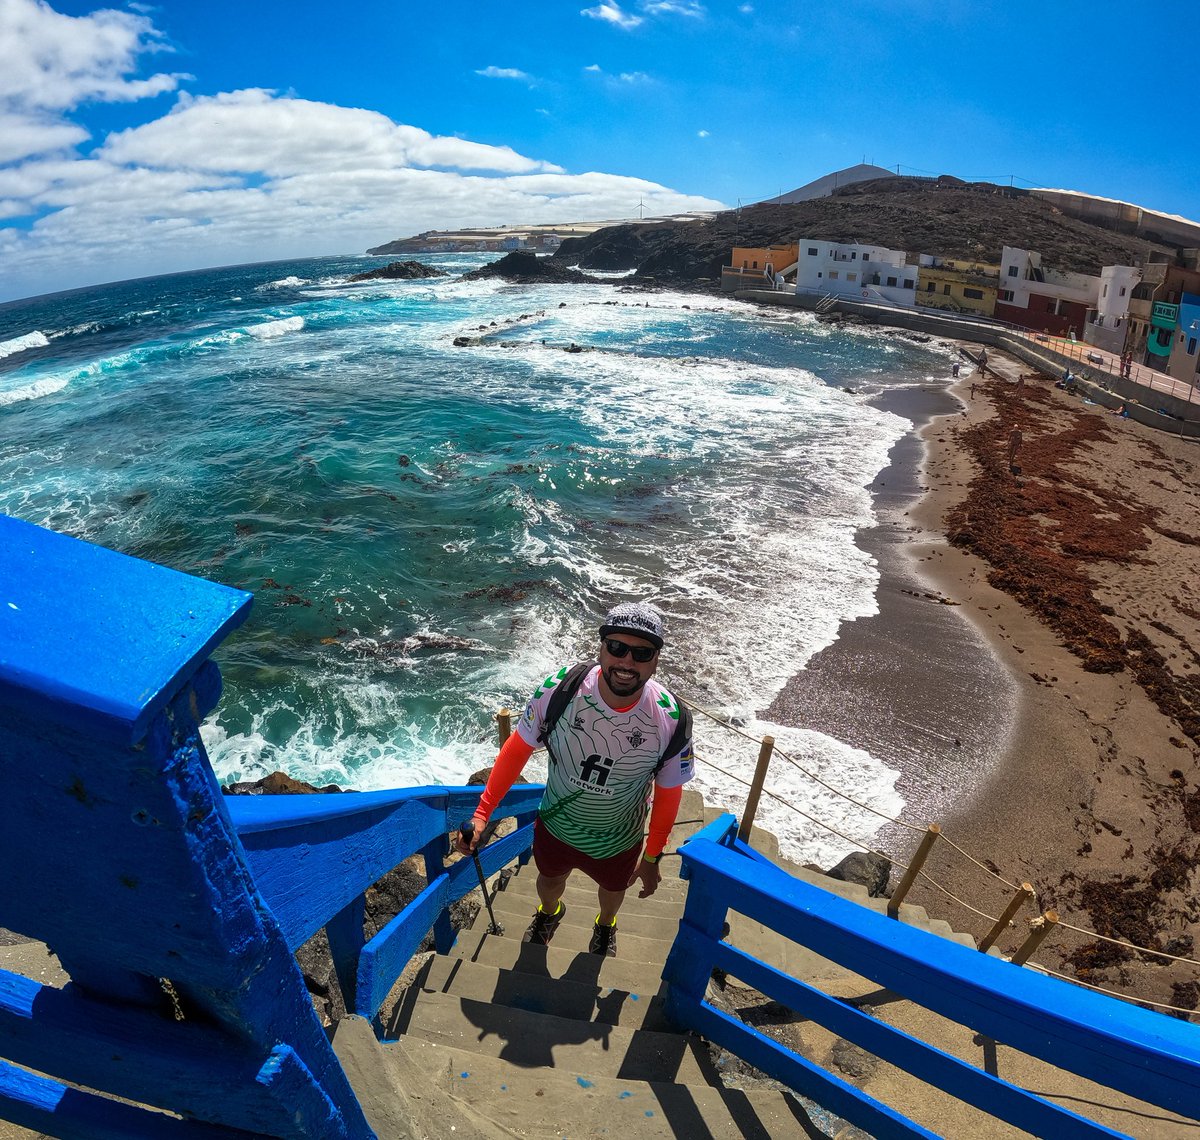 🌊🏝️*... Ruta de las piscinas ...*🏝️🌊

#GranCanaria
#islascanarias
#Canarias
#canaryislands
#goprohero